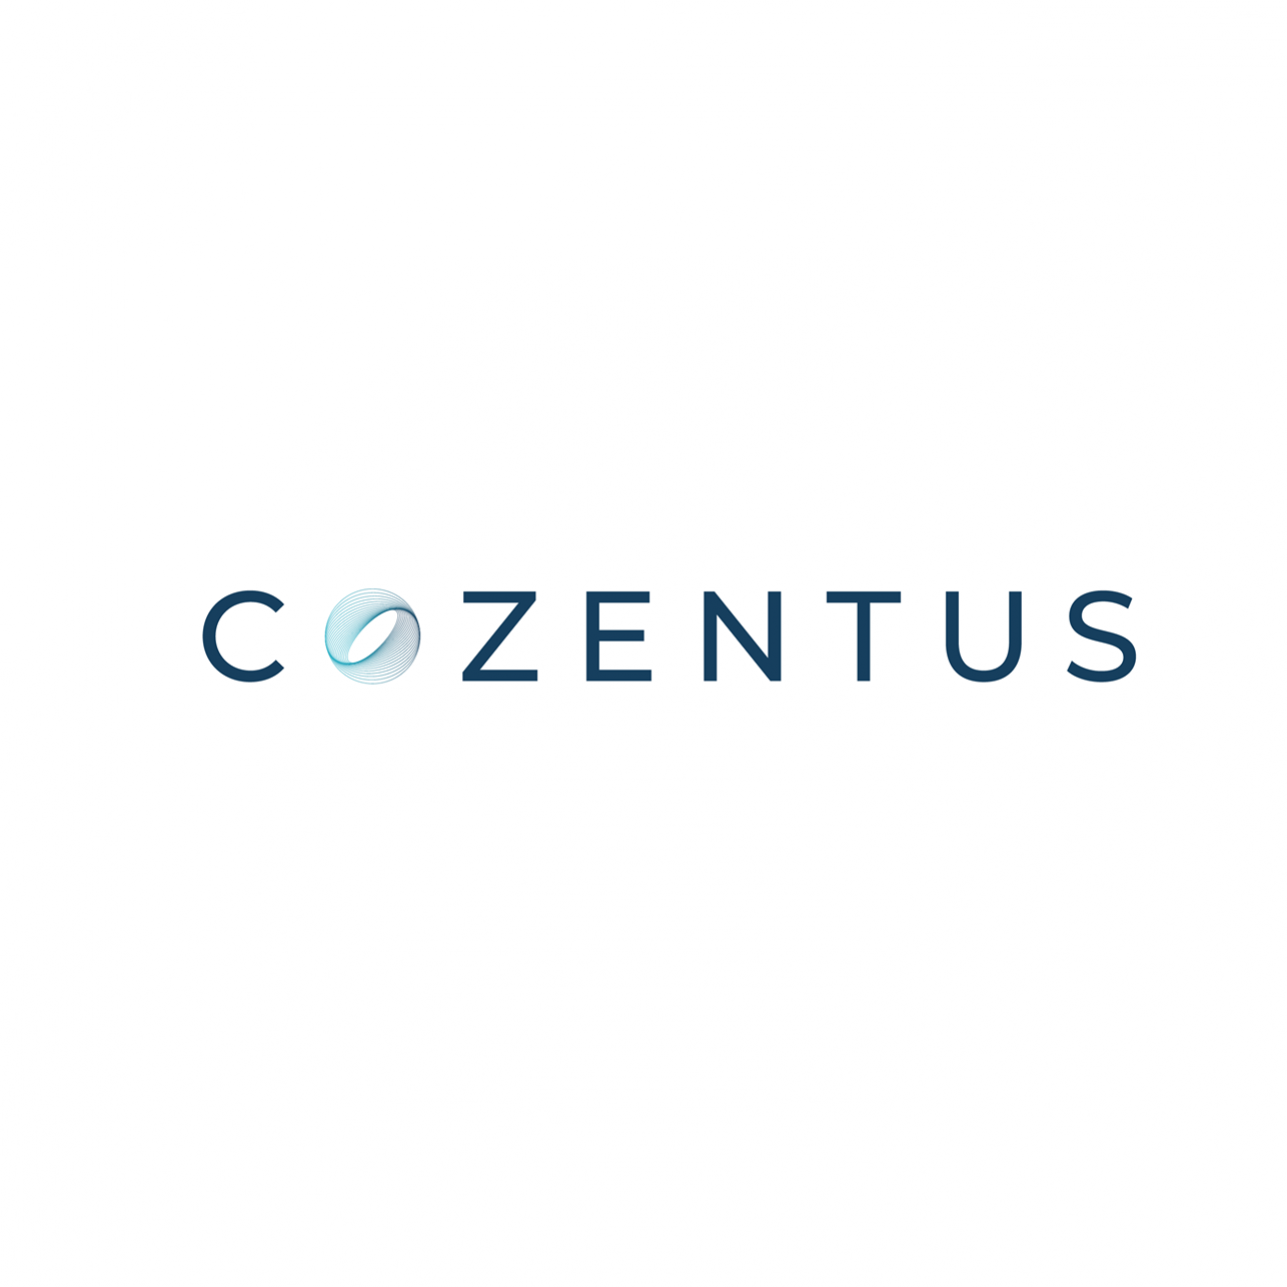 Cozentus22